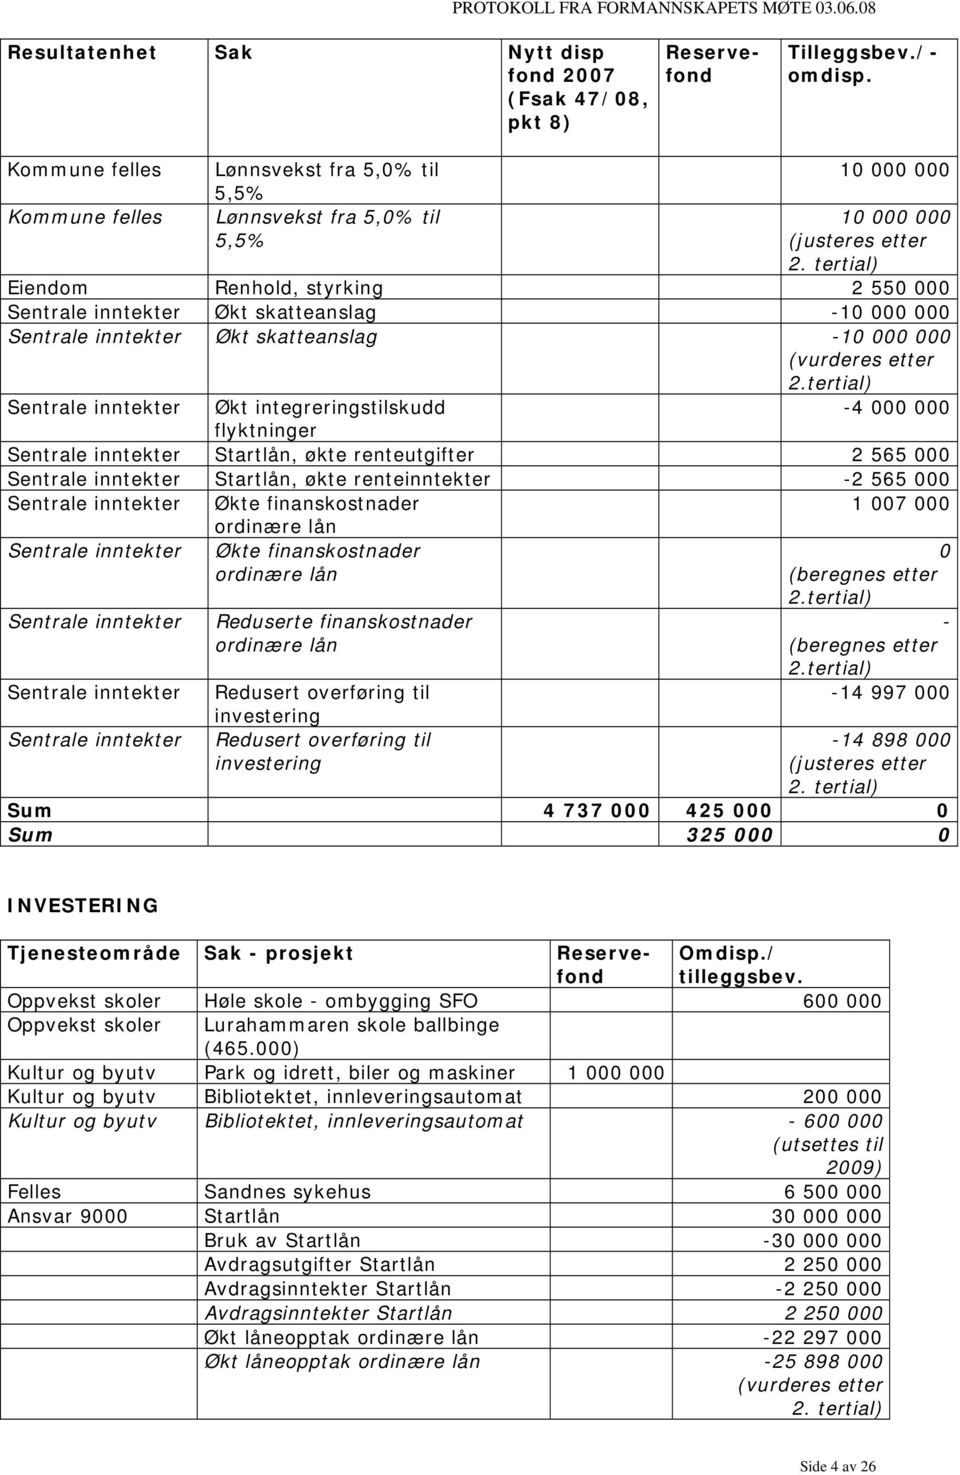 tertial) Eiendom Renhold, styrking 2 550 000 Sentrale inntekter Økt skatteanslag -10 000 000 Sentrale inntekter Økt skatteanslag -10 000 000 (vurderes etter 2.